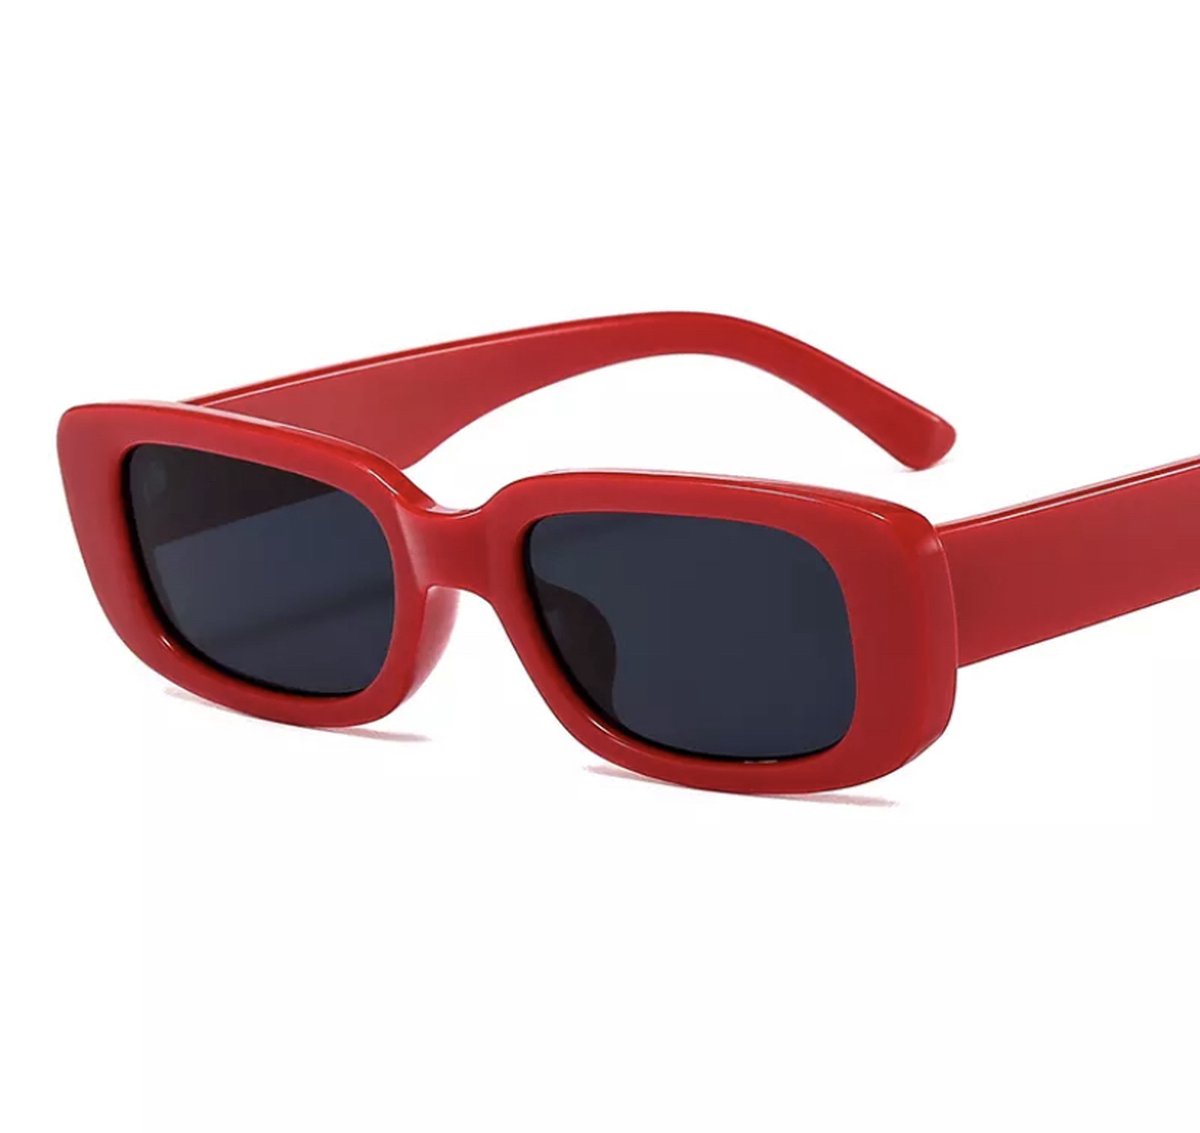 Retro Rechthoekige Zonnebril - Vrouwen - Rood